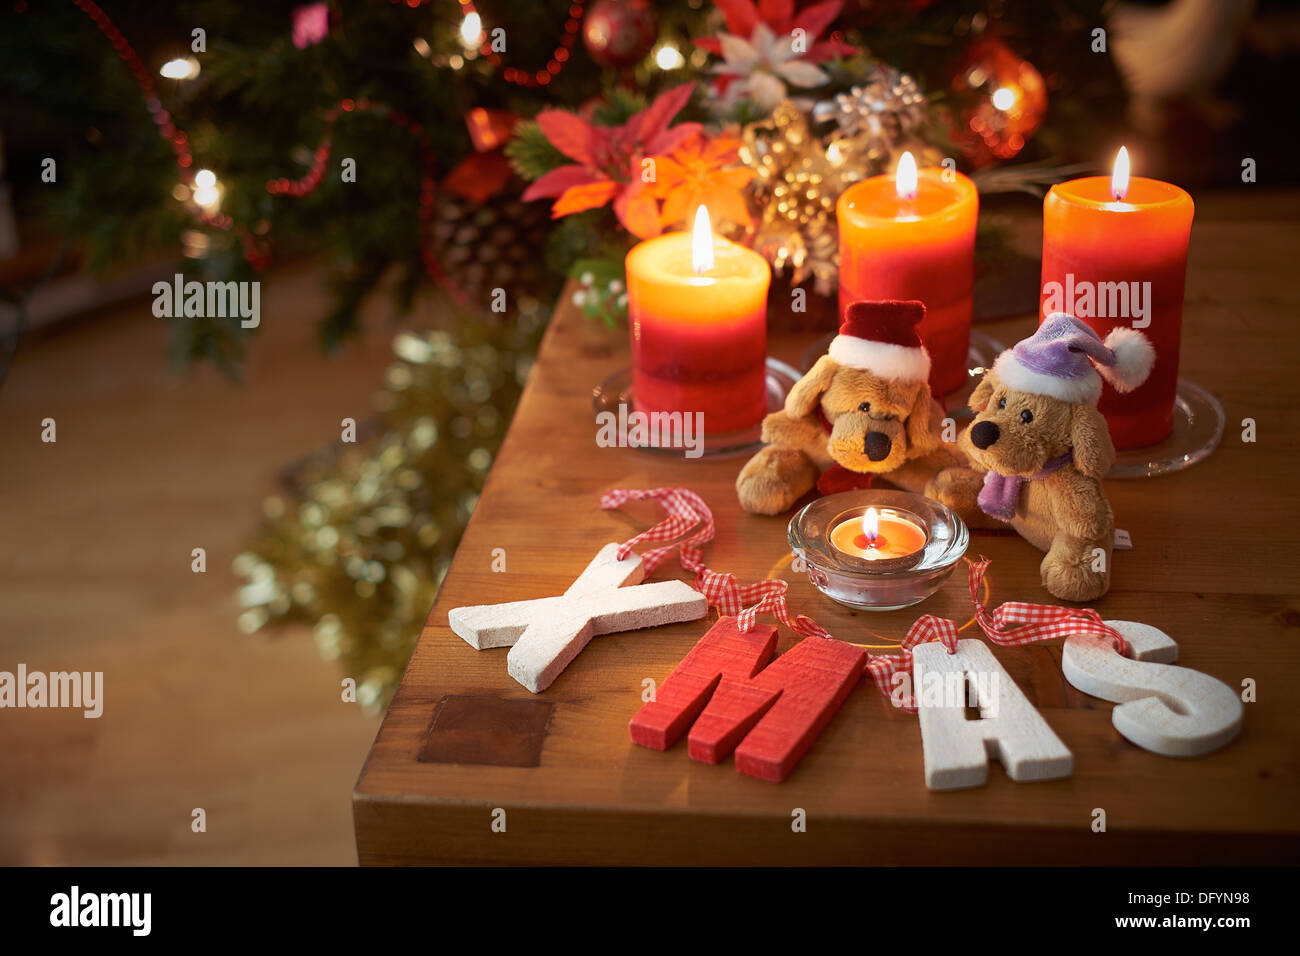 Ein Weihnachtsbaum-Szene mit zwei Teddybären mit brennenden Kerzen. Stockfoto